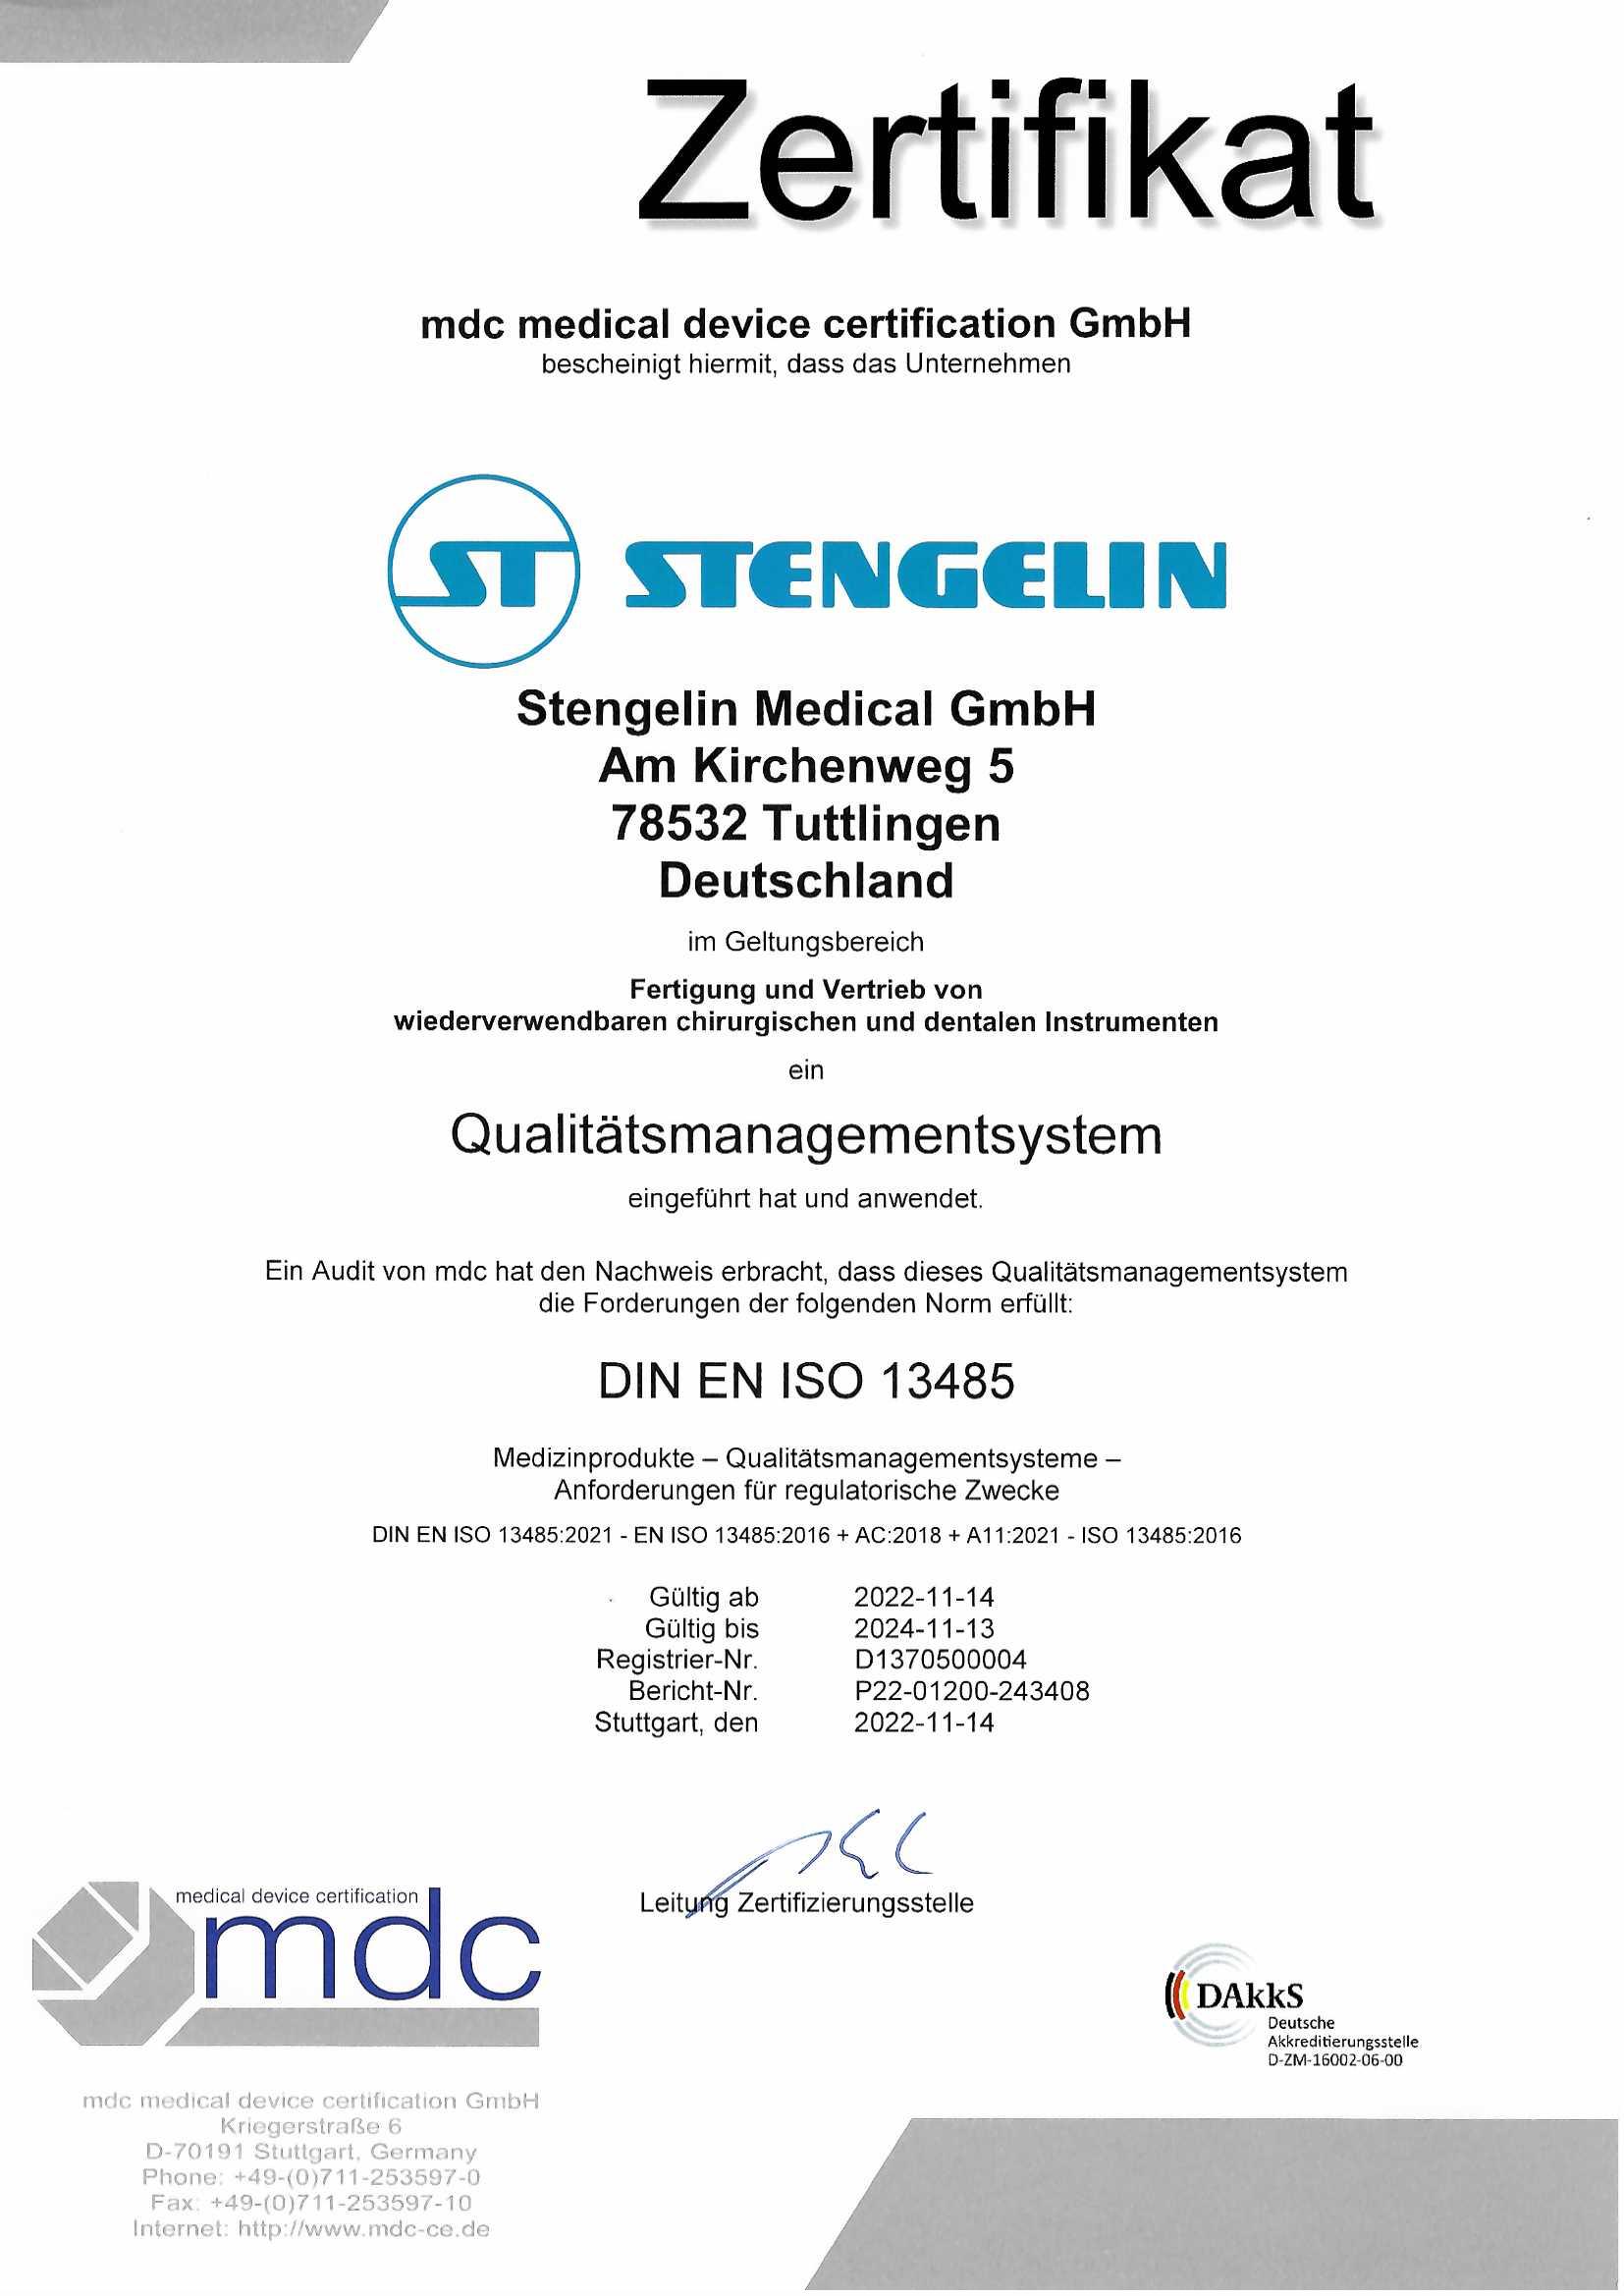 Zertifikat Stengelin DIN EN ISO 13485 deutsch